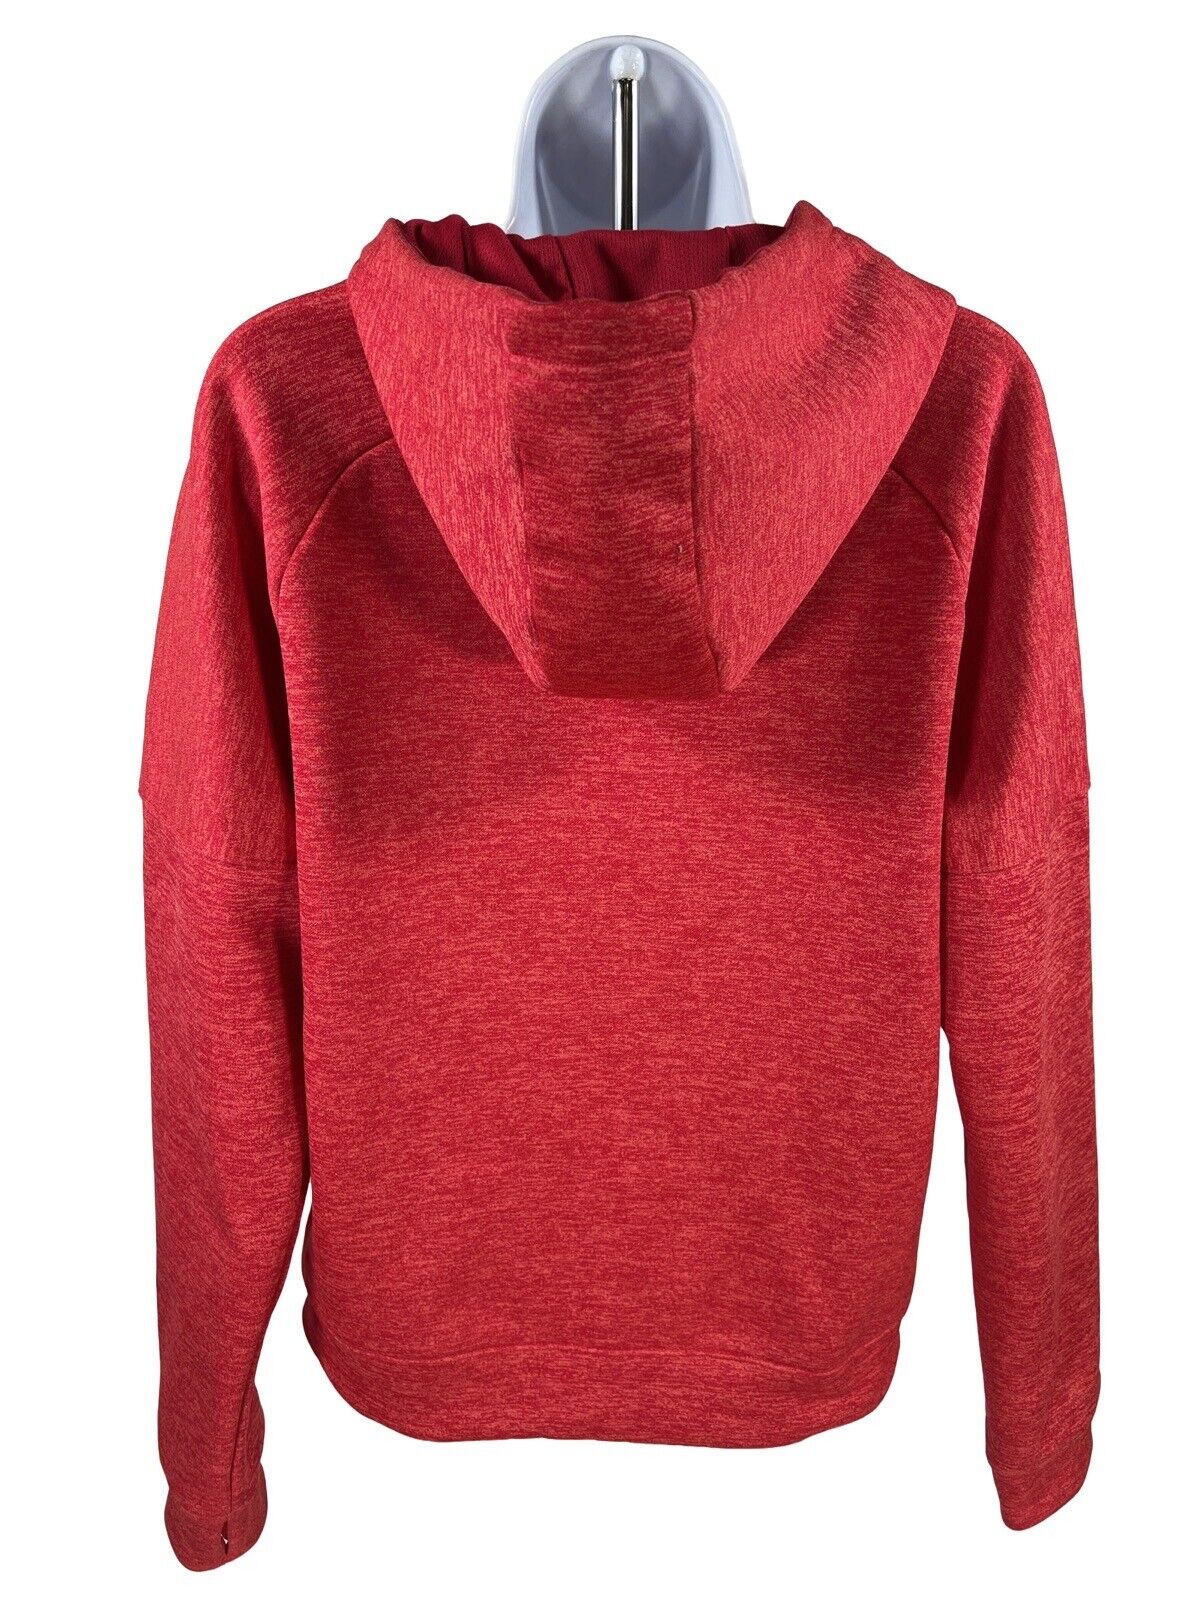 Adidas Women's Pink Full Zip Fleece Lined Hoodie Sweatshirt - M